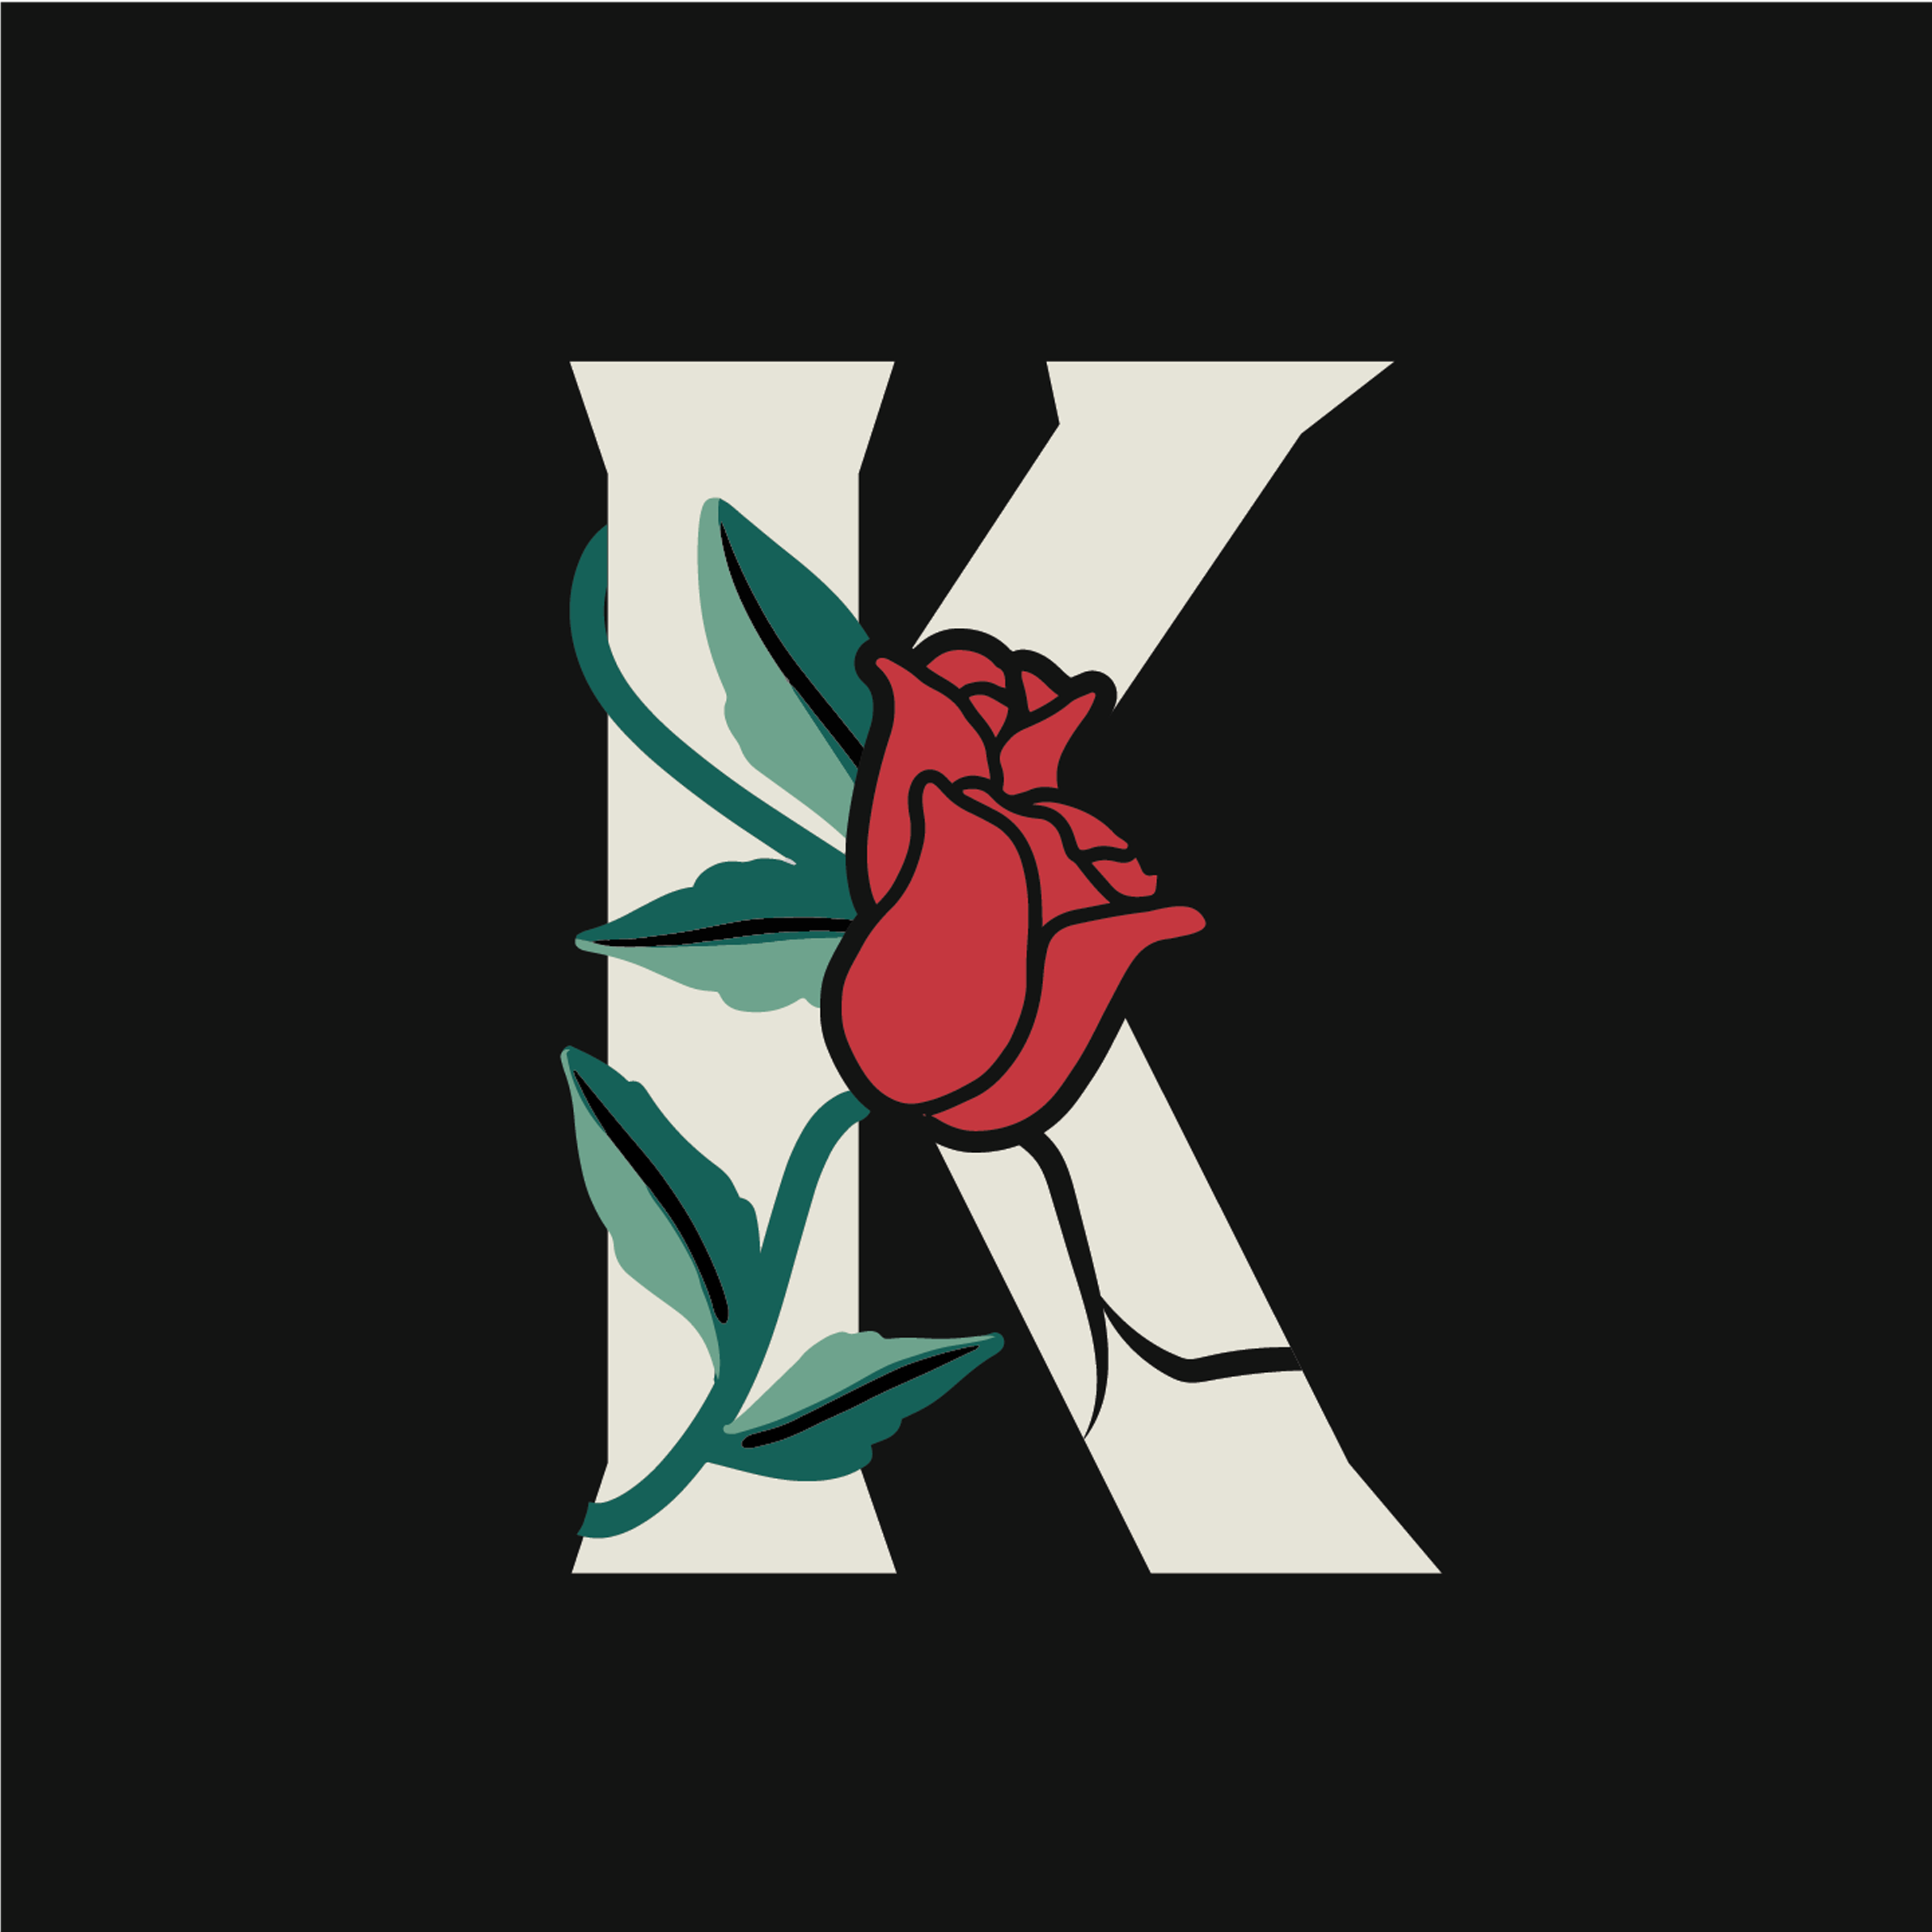 rose-letter-k-design-theme